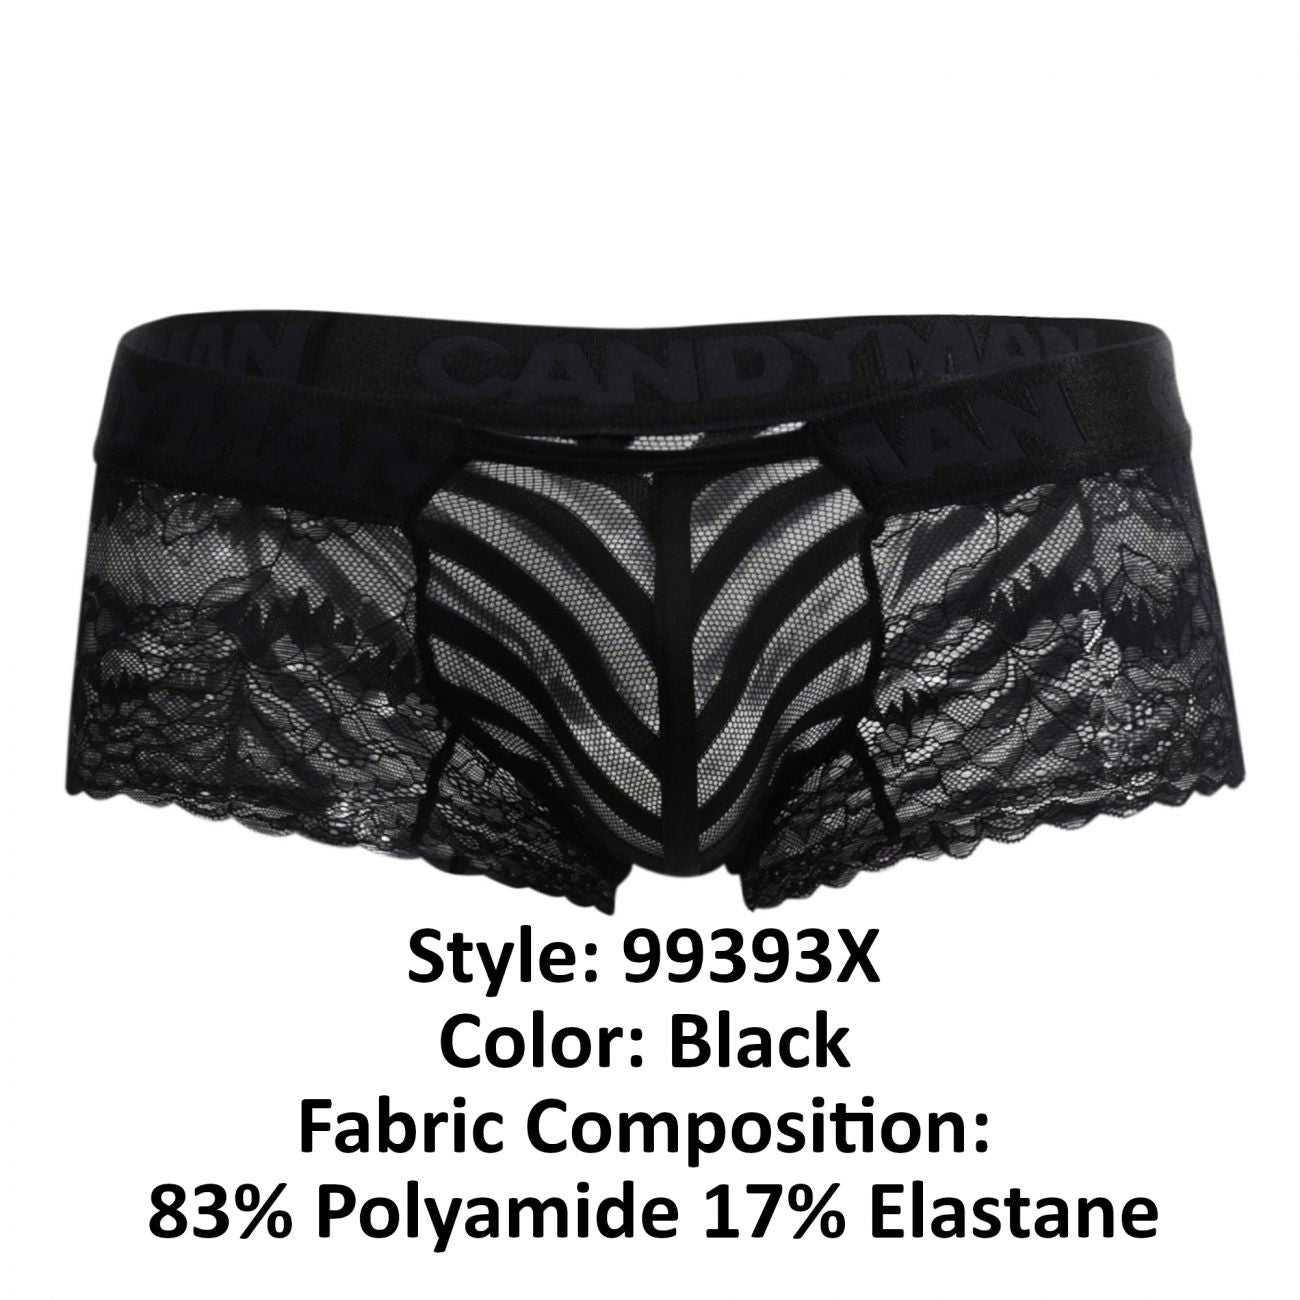 JCSTK - CandyMan 99393X Lace-Mesh Trunks Black Plus Sizes